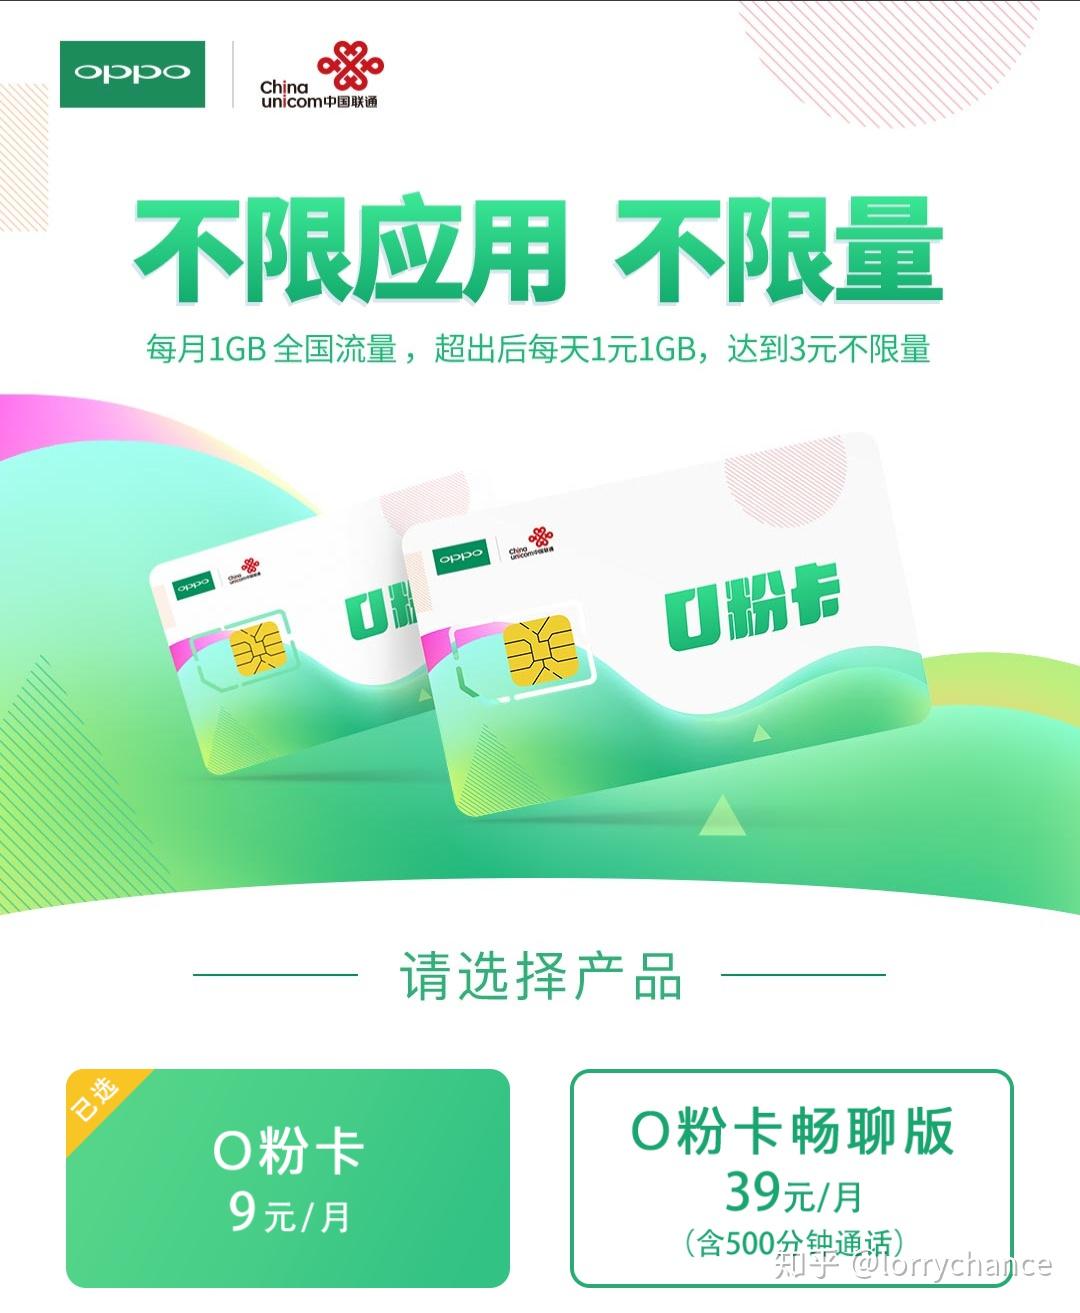 联通OPPO推出O粉卡,月租9元1GB,套外灵活